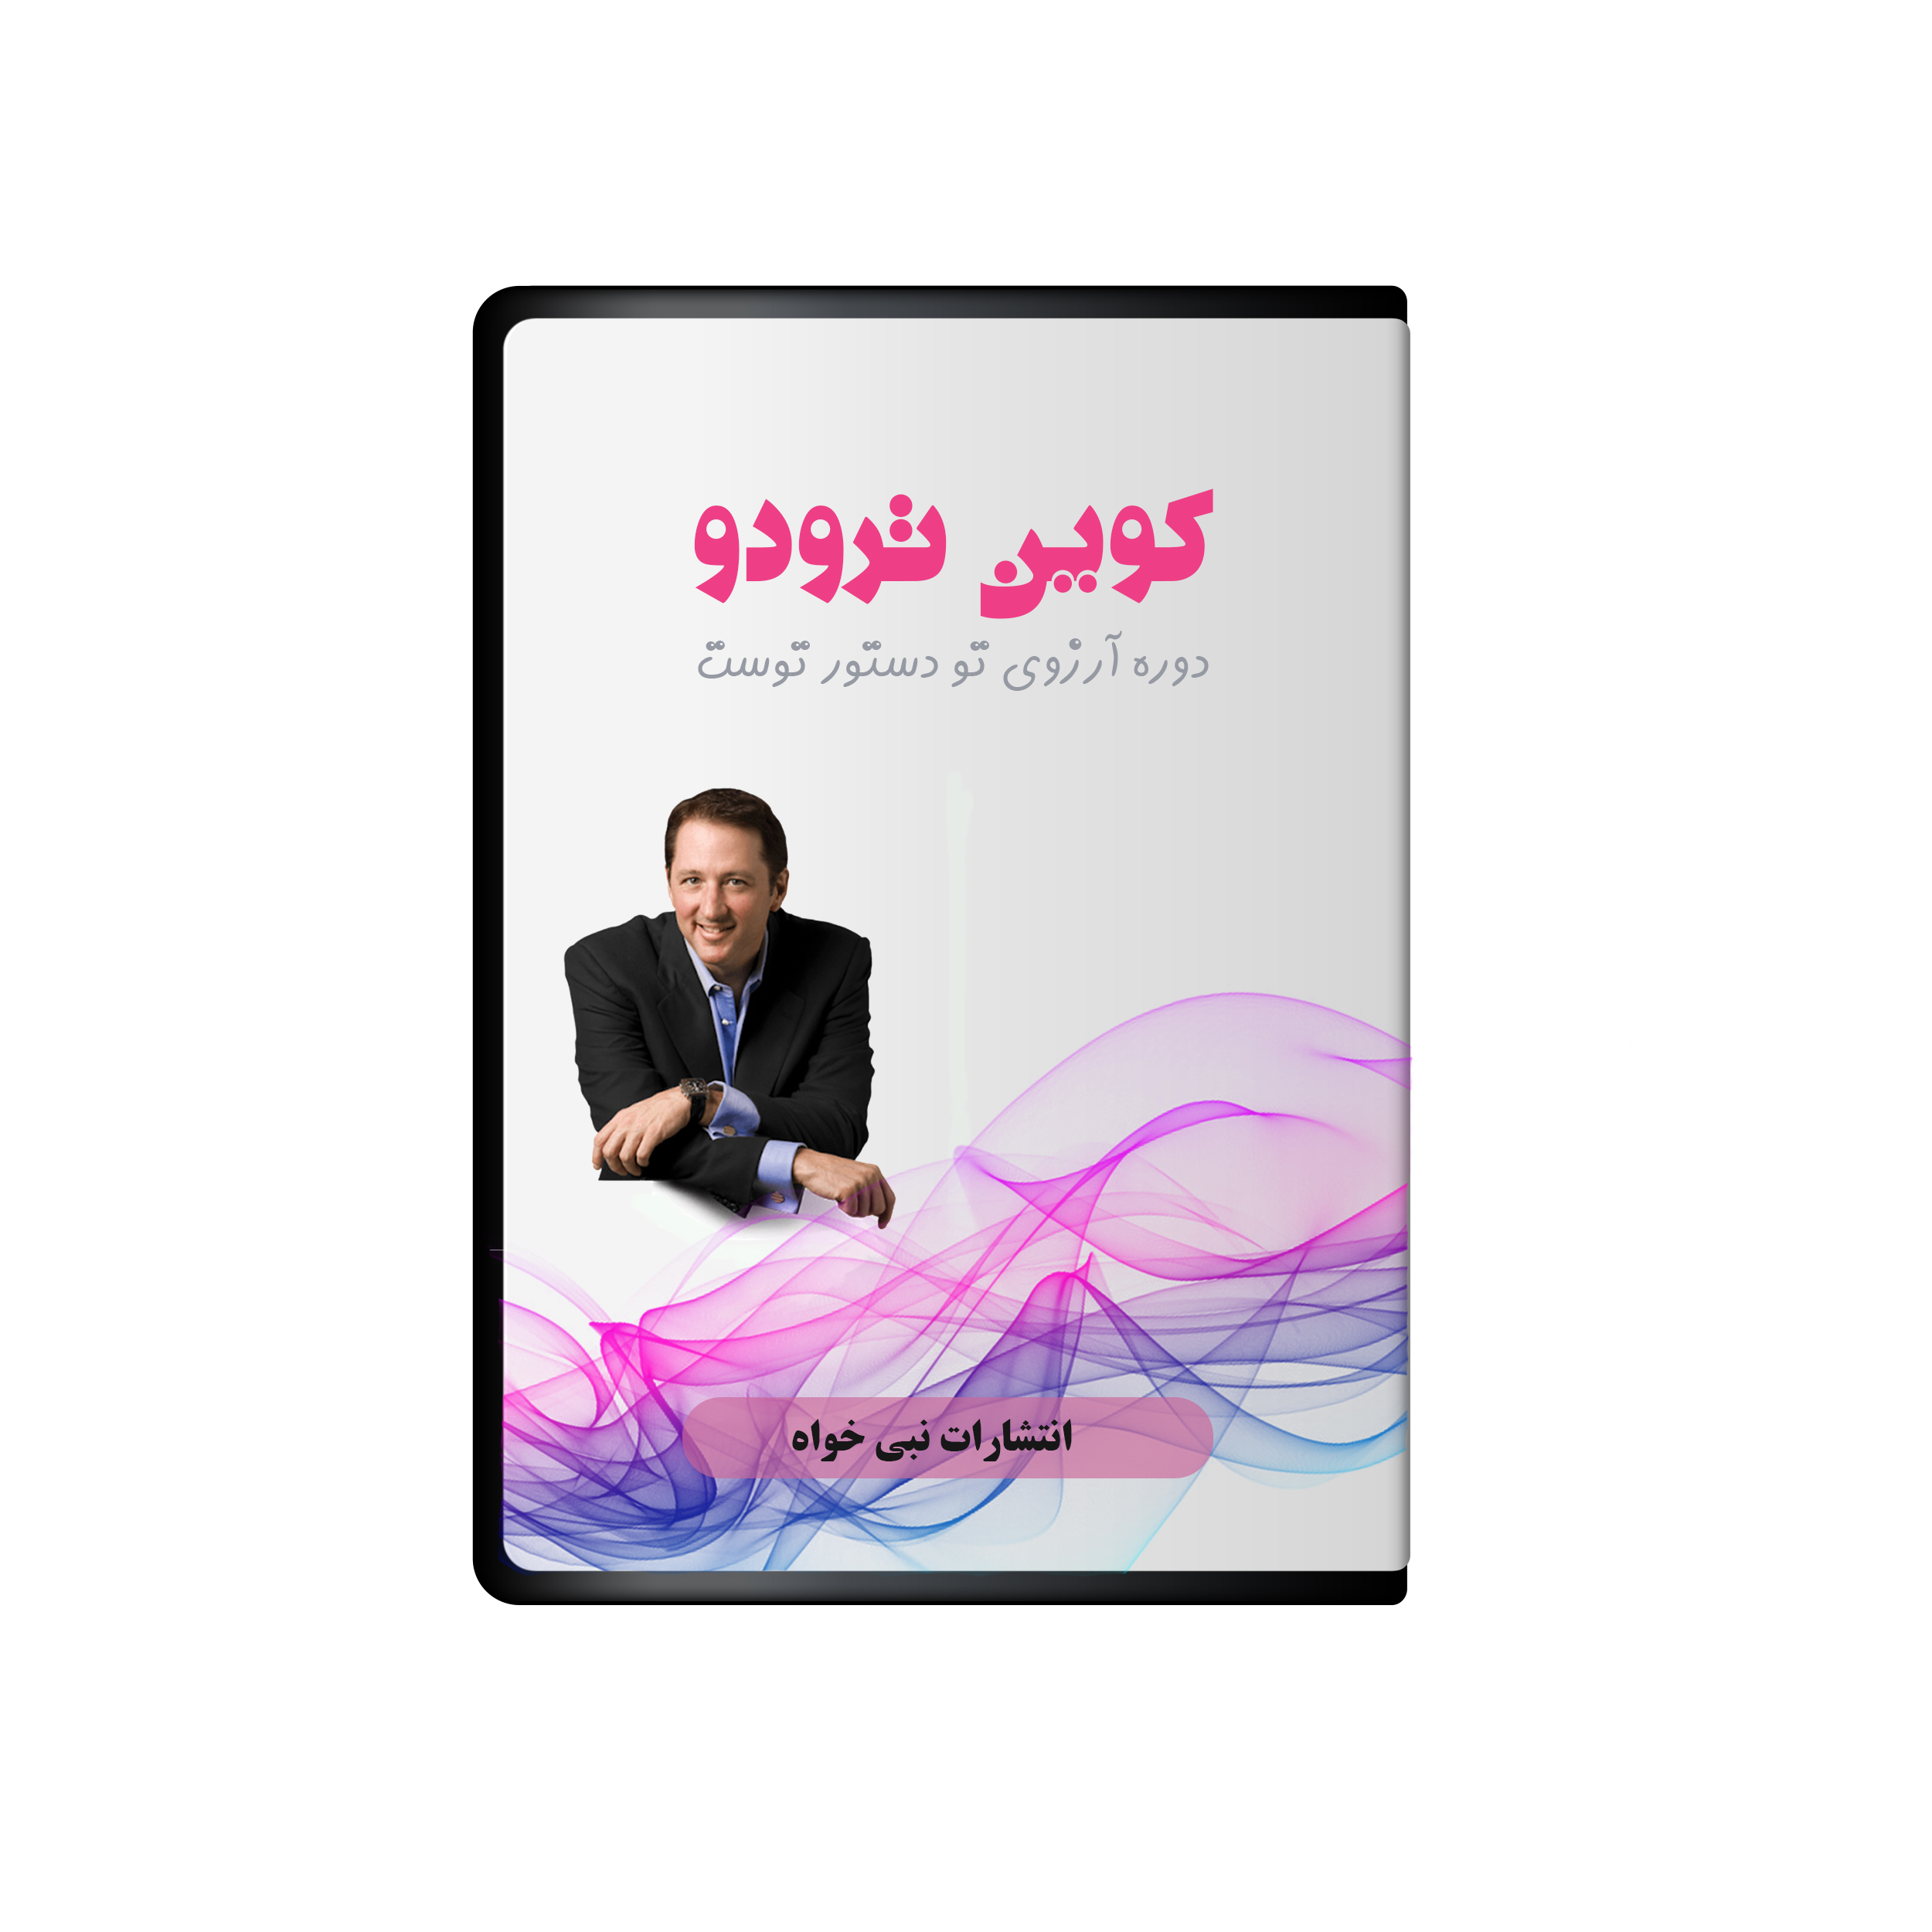 آلبوم صوتی آرزوی تو دستور توست نشر نبی خواه